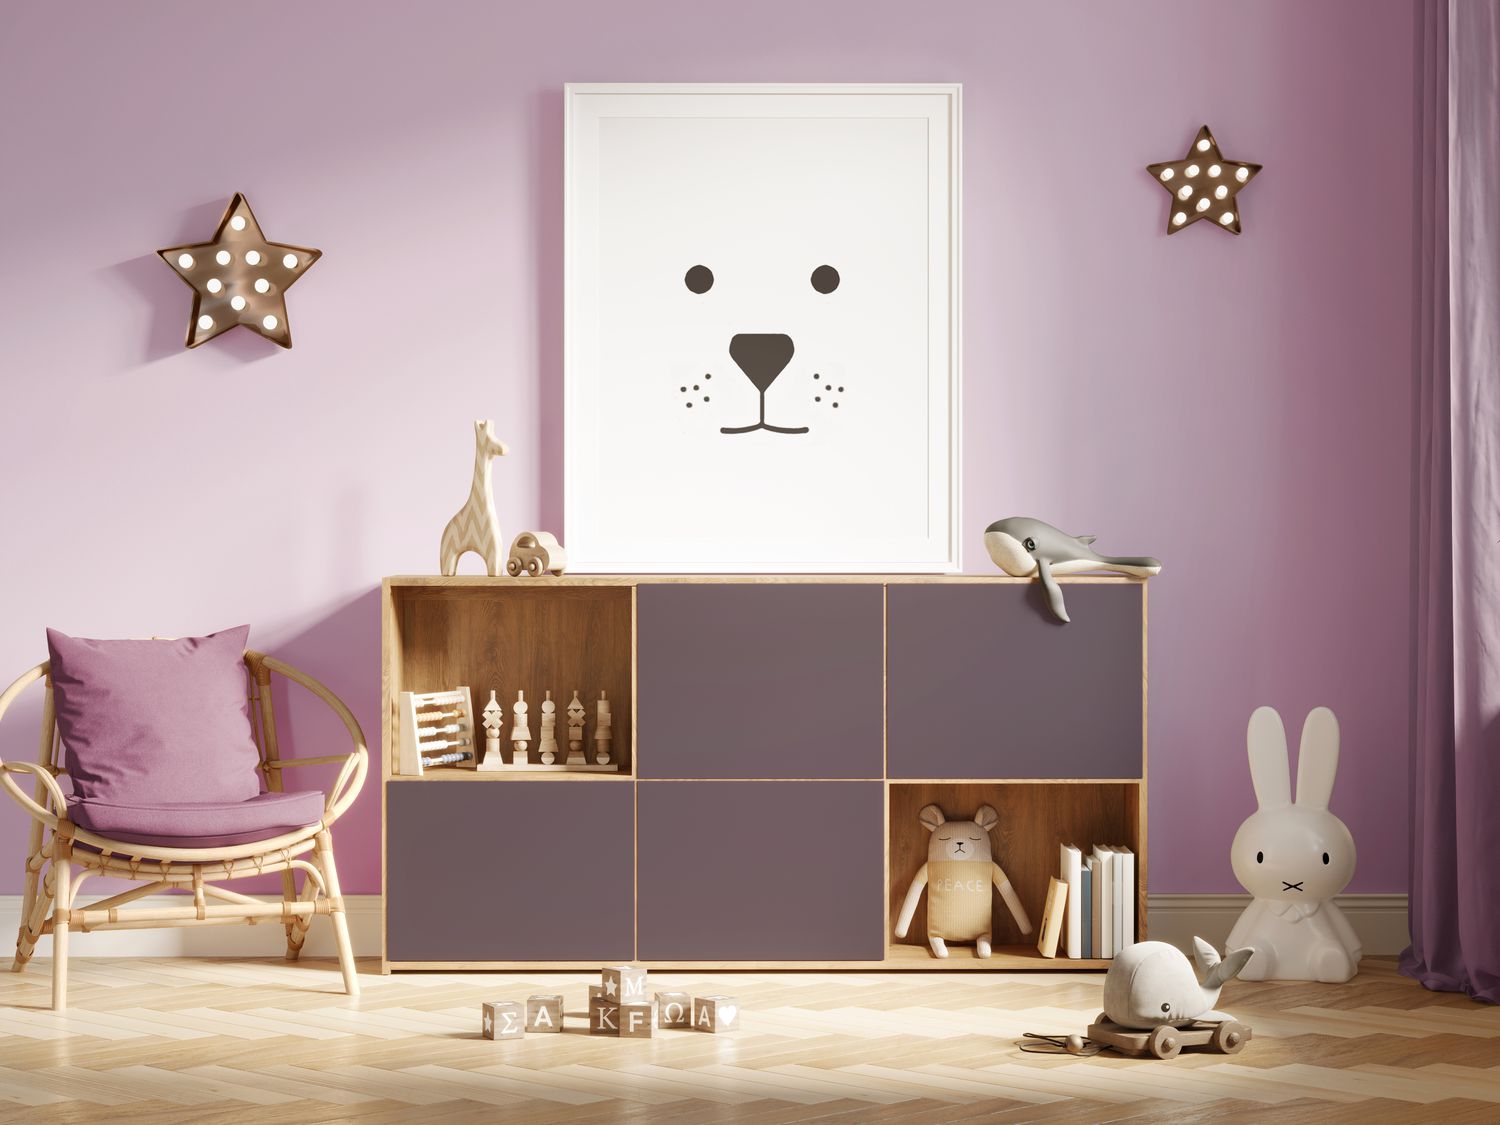 3d Mockup do interior do quarto do bebê com uma moldura com impressão mínima de um urso e mobília rosa com brinquedos